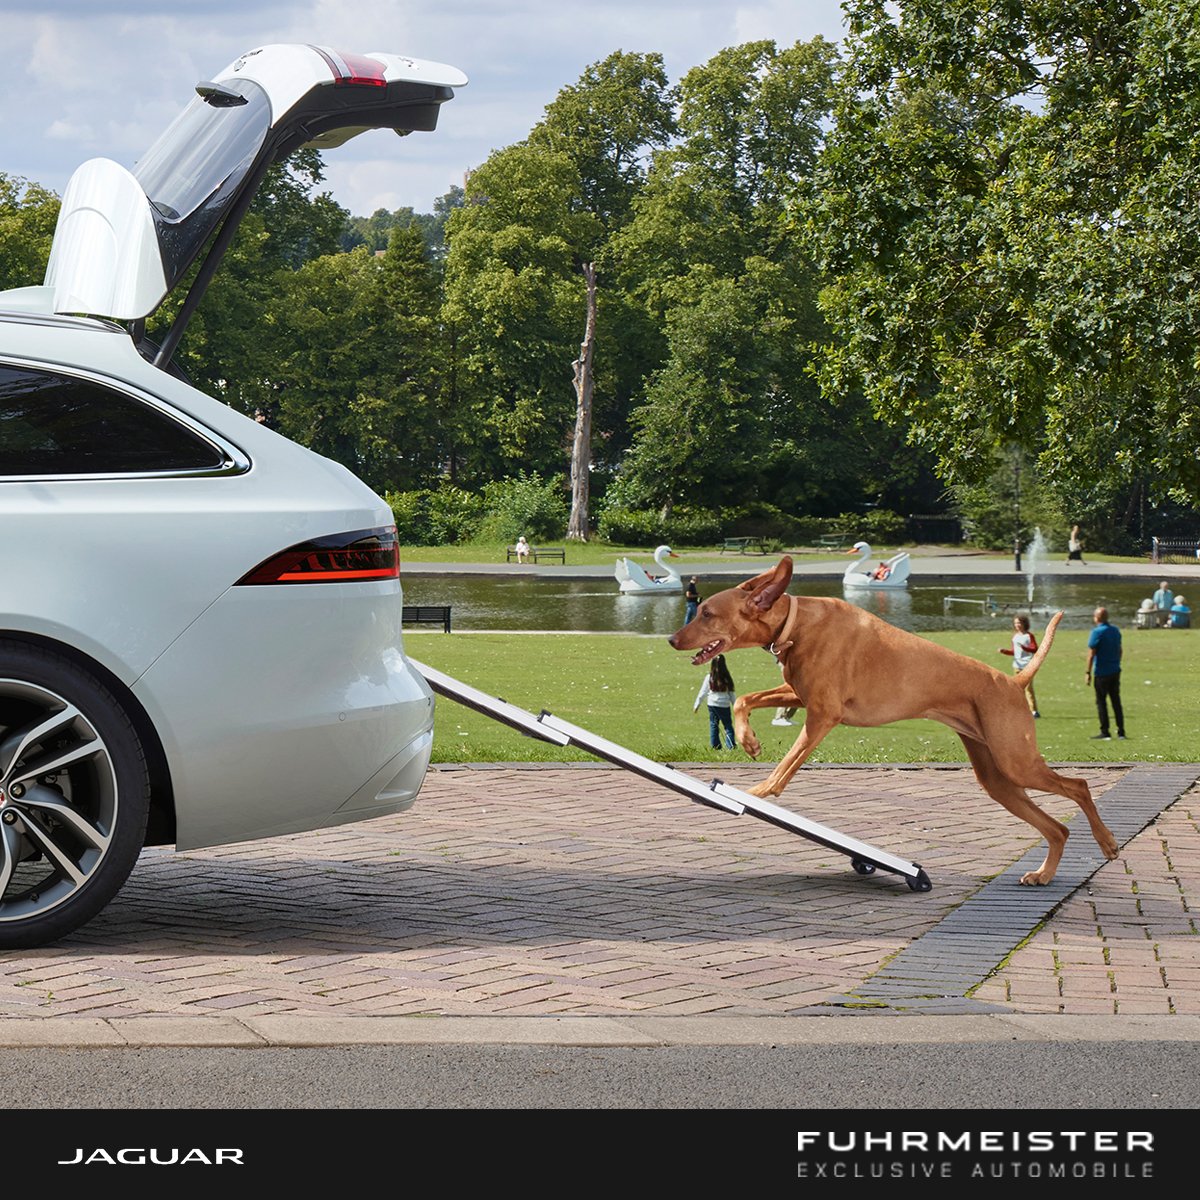 Glauben Sie auch, dass Ihr treuer Vierbeiner und Ihr eleganter Jaguar das perfekte Match sind? 🤝 Dann haben wir genau das Richtige für Sie! 

Verbinden Sie Stil und Komfort mit dem Jaguar Original Hundezubehör. Entworfen im Jaguar Design und mit Rücksicht auf Tierwohl. 🐶